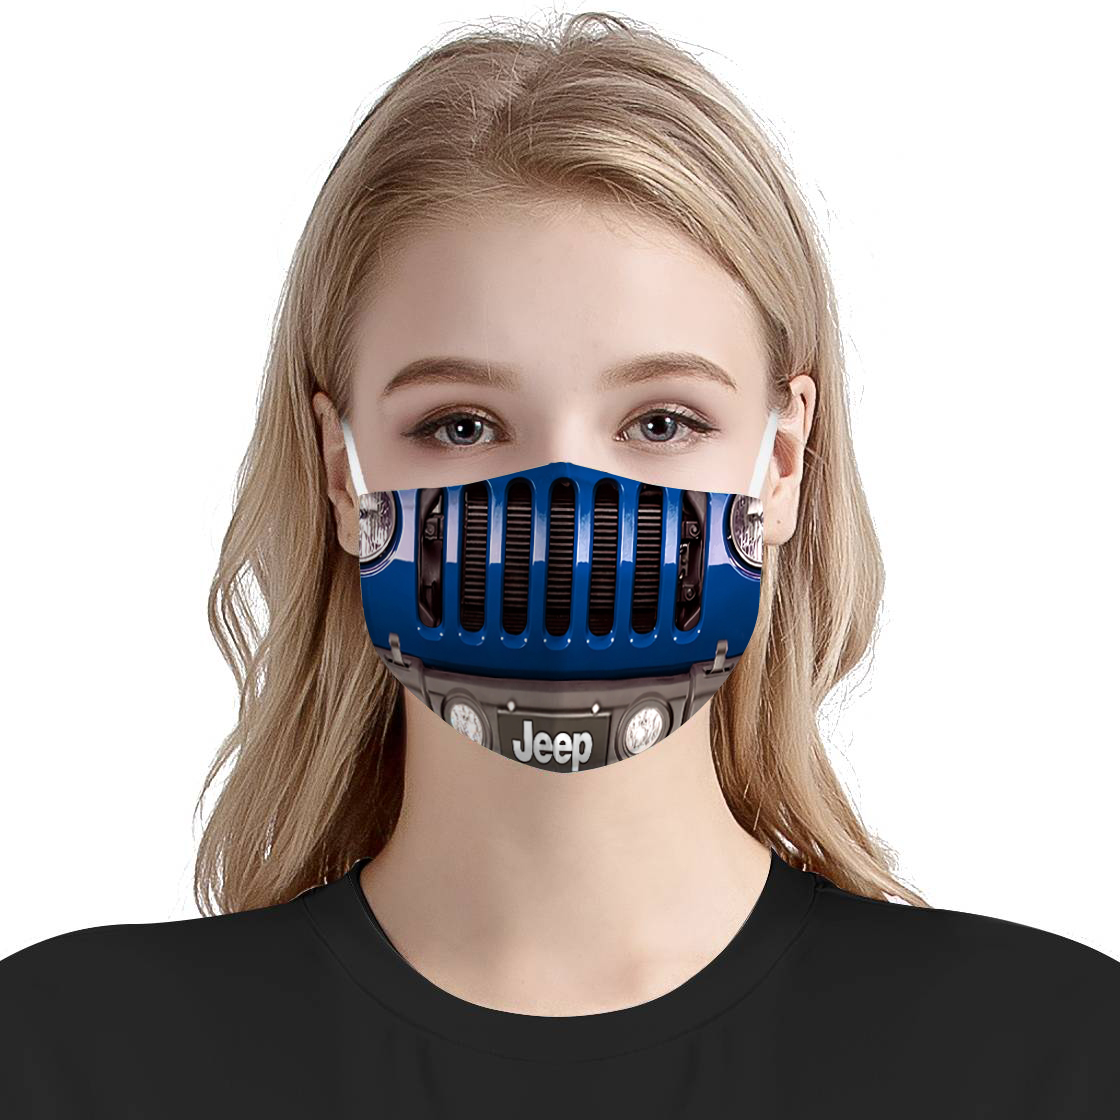 Jeep wrangler face mask – Best Seller